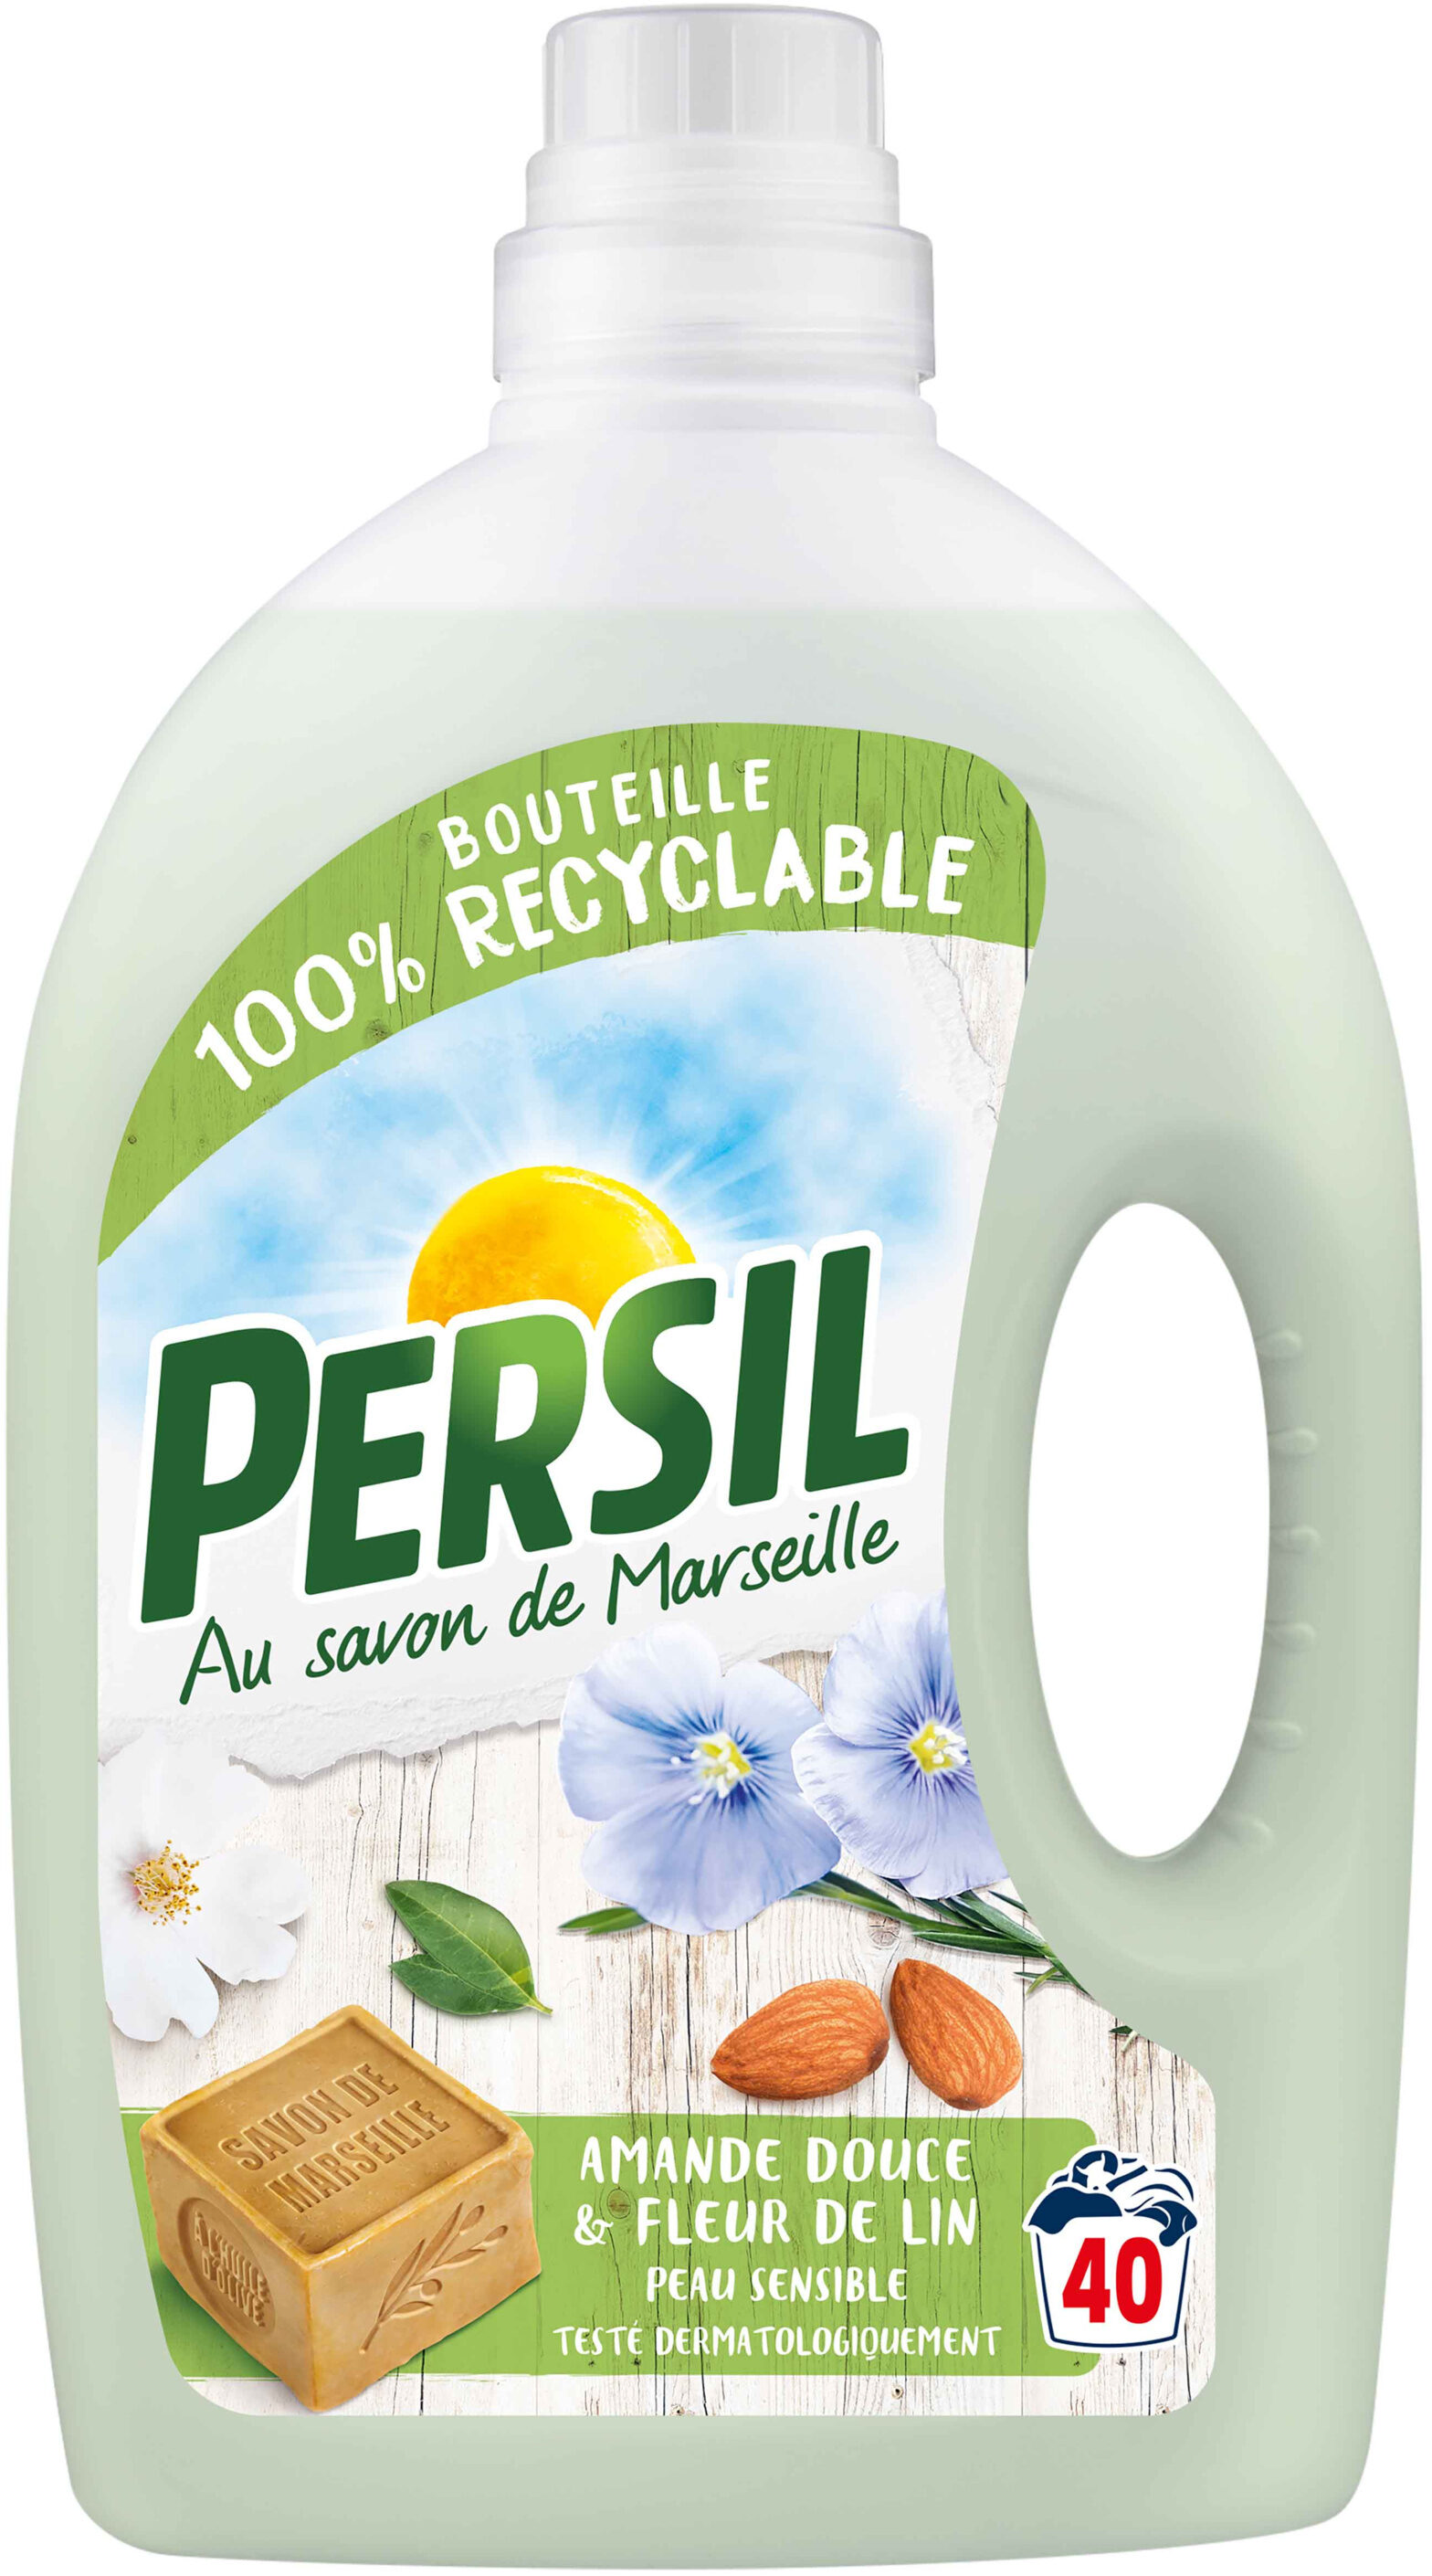 Persil Lessive Liquide Peau Sensible Amande Douce 2l 40 Lavages - Produit - fr